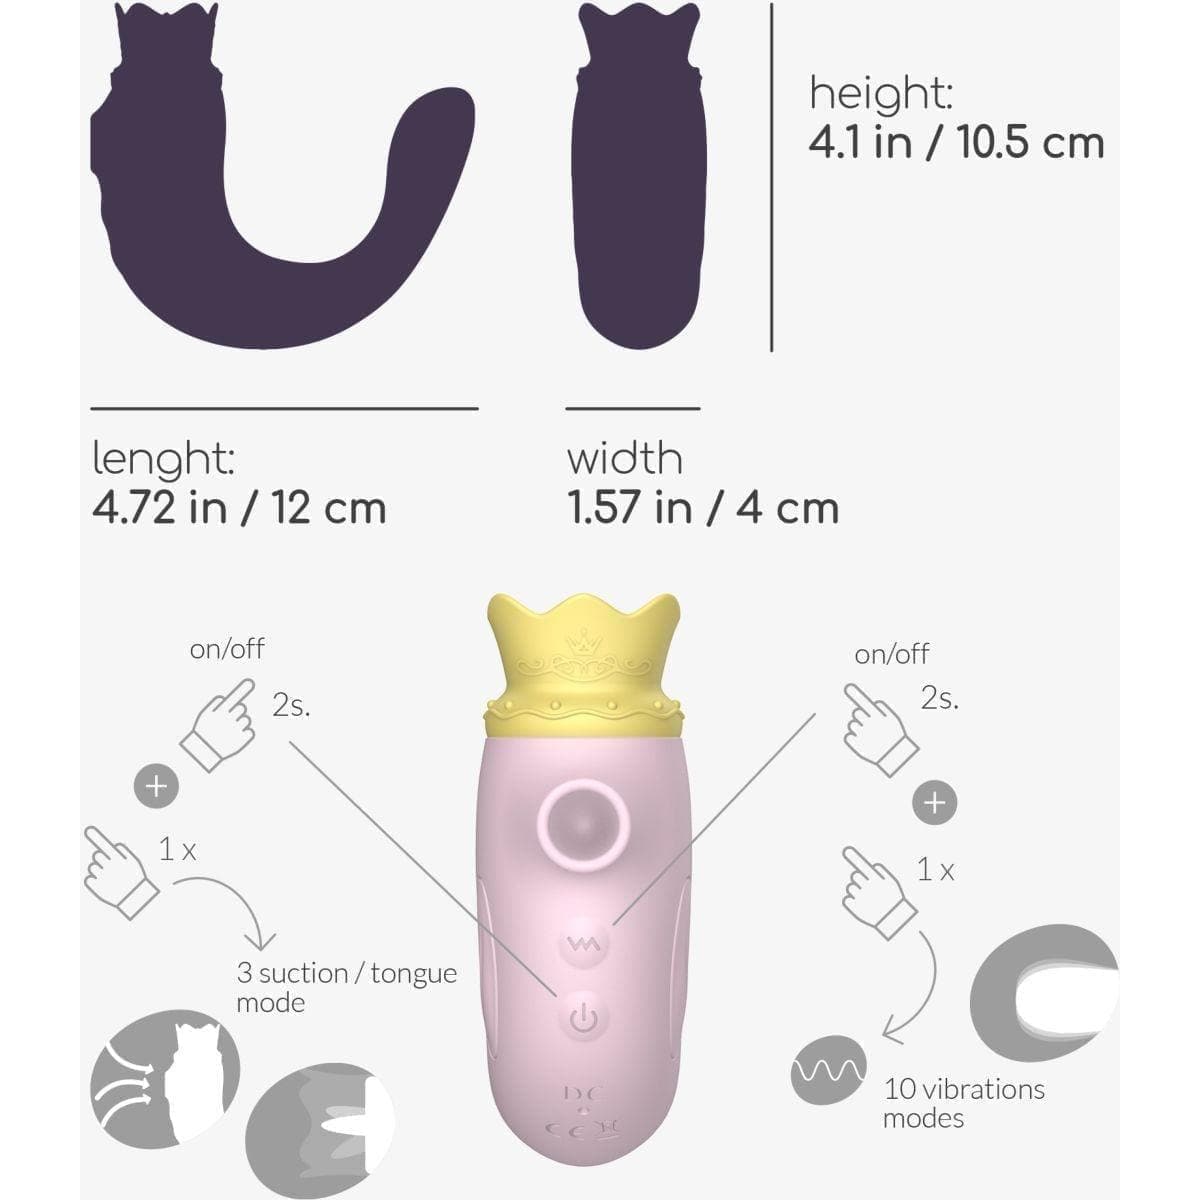 Estimulador Hiri Rosa, 3 em 1, Sucção, Oral, Penetração - Pérola SexShop